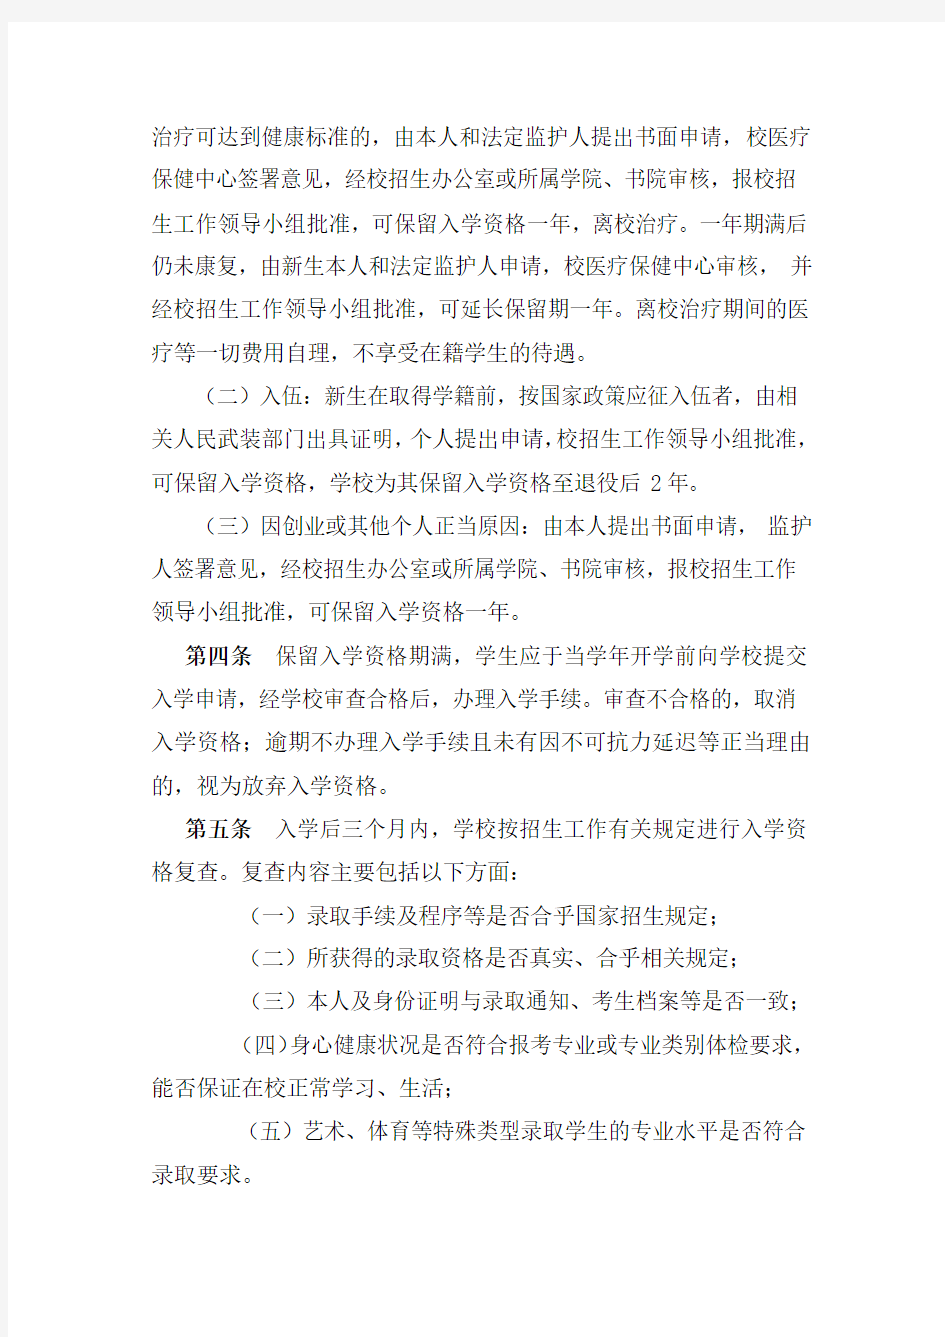 南京审计大学本科学生学籍管理规定(2017年修订)